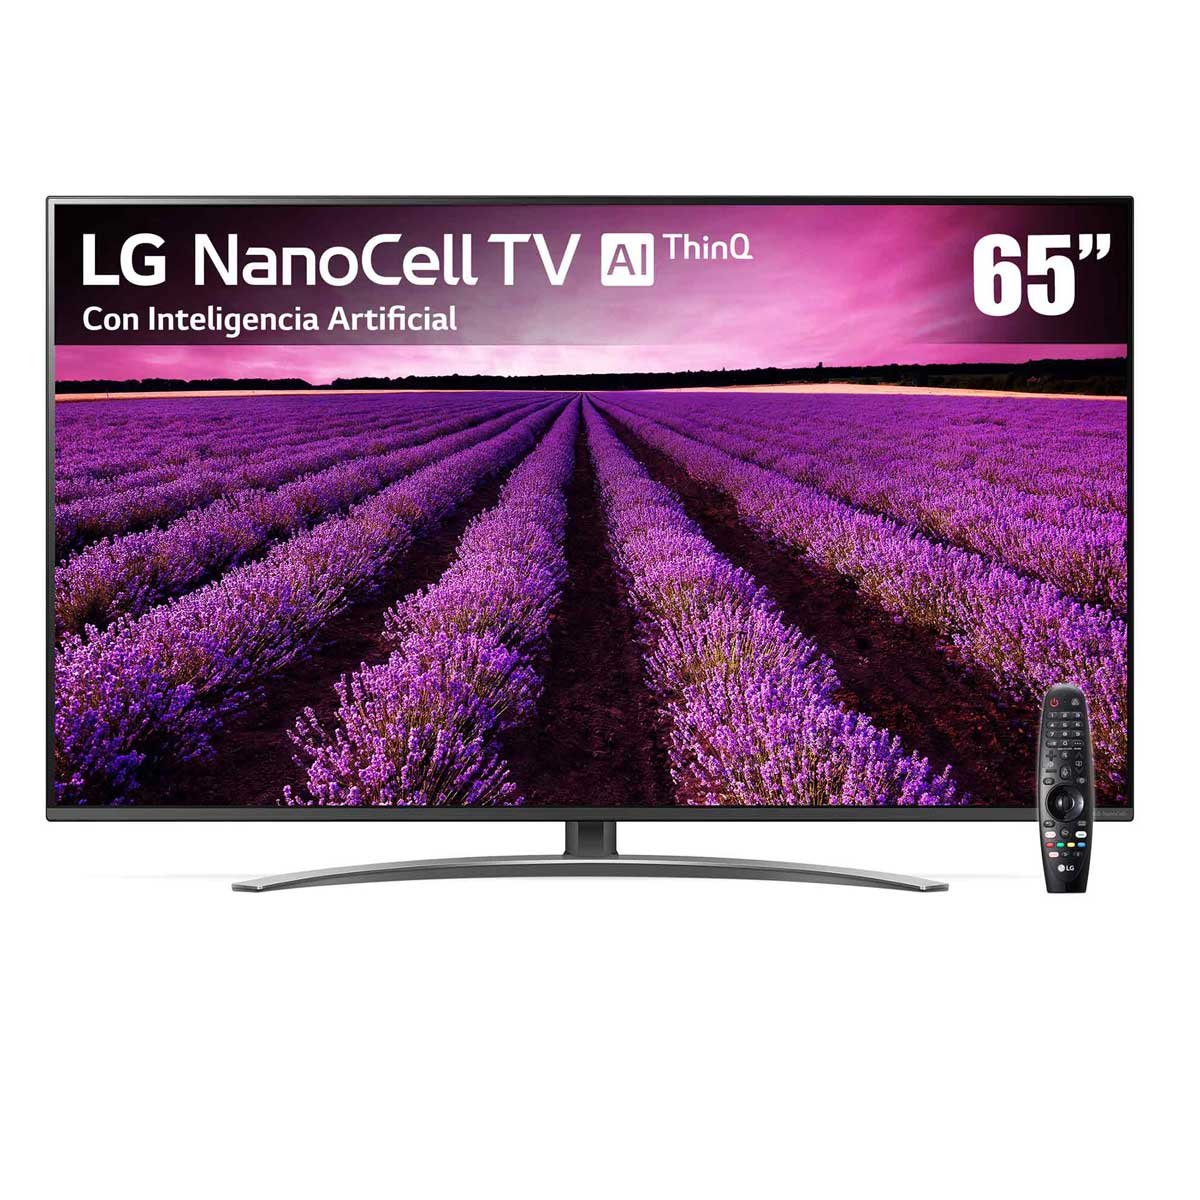 La sorprendente calidad de imagen de la TV LG Nanocell 43 